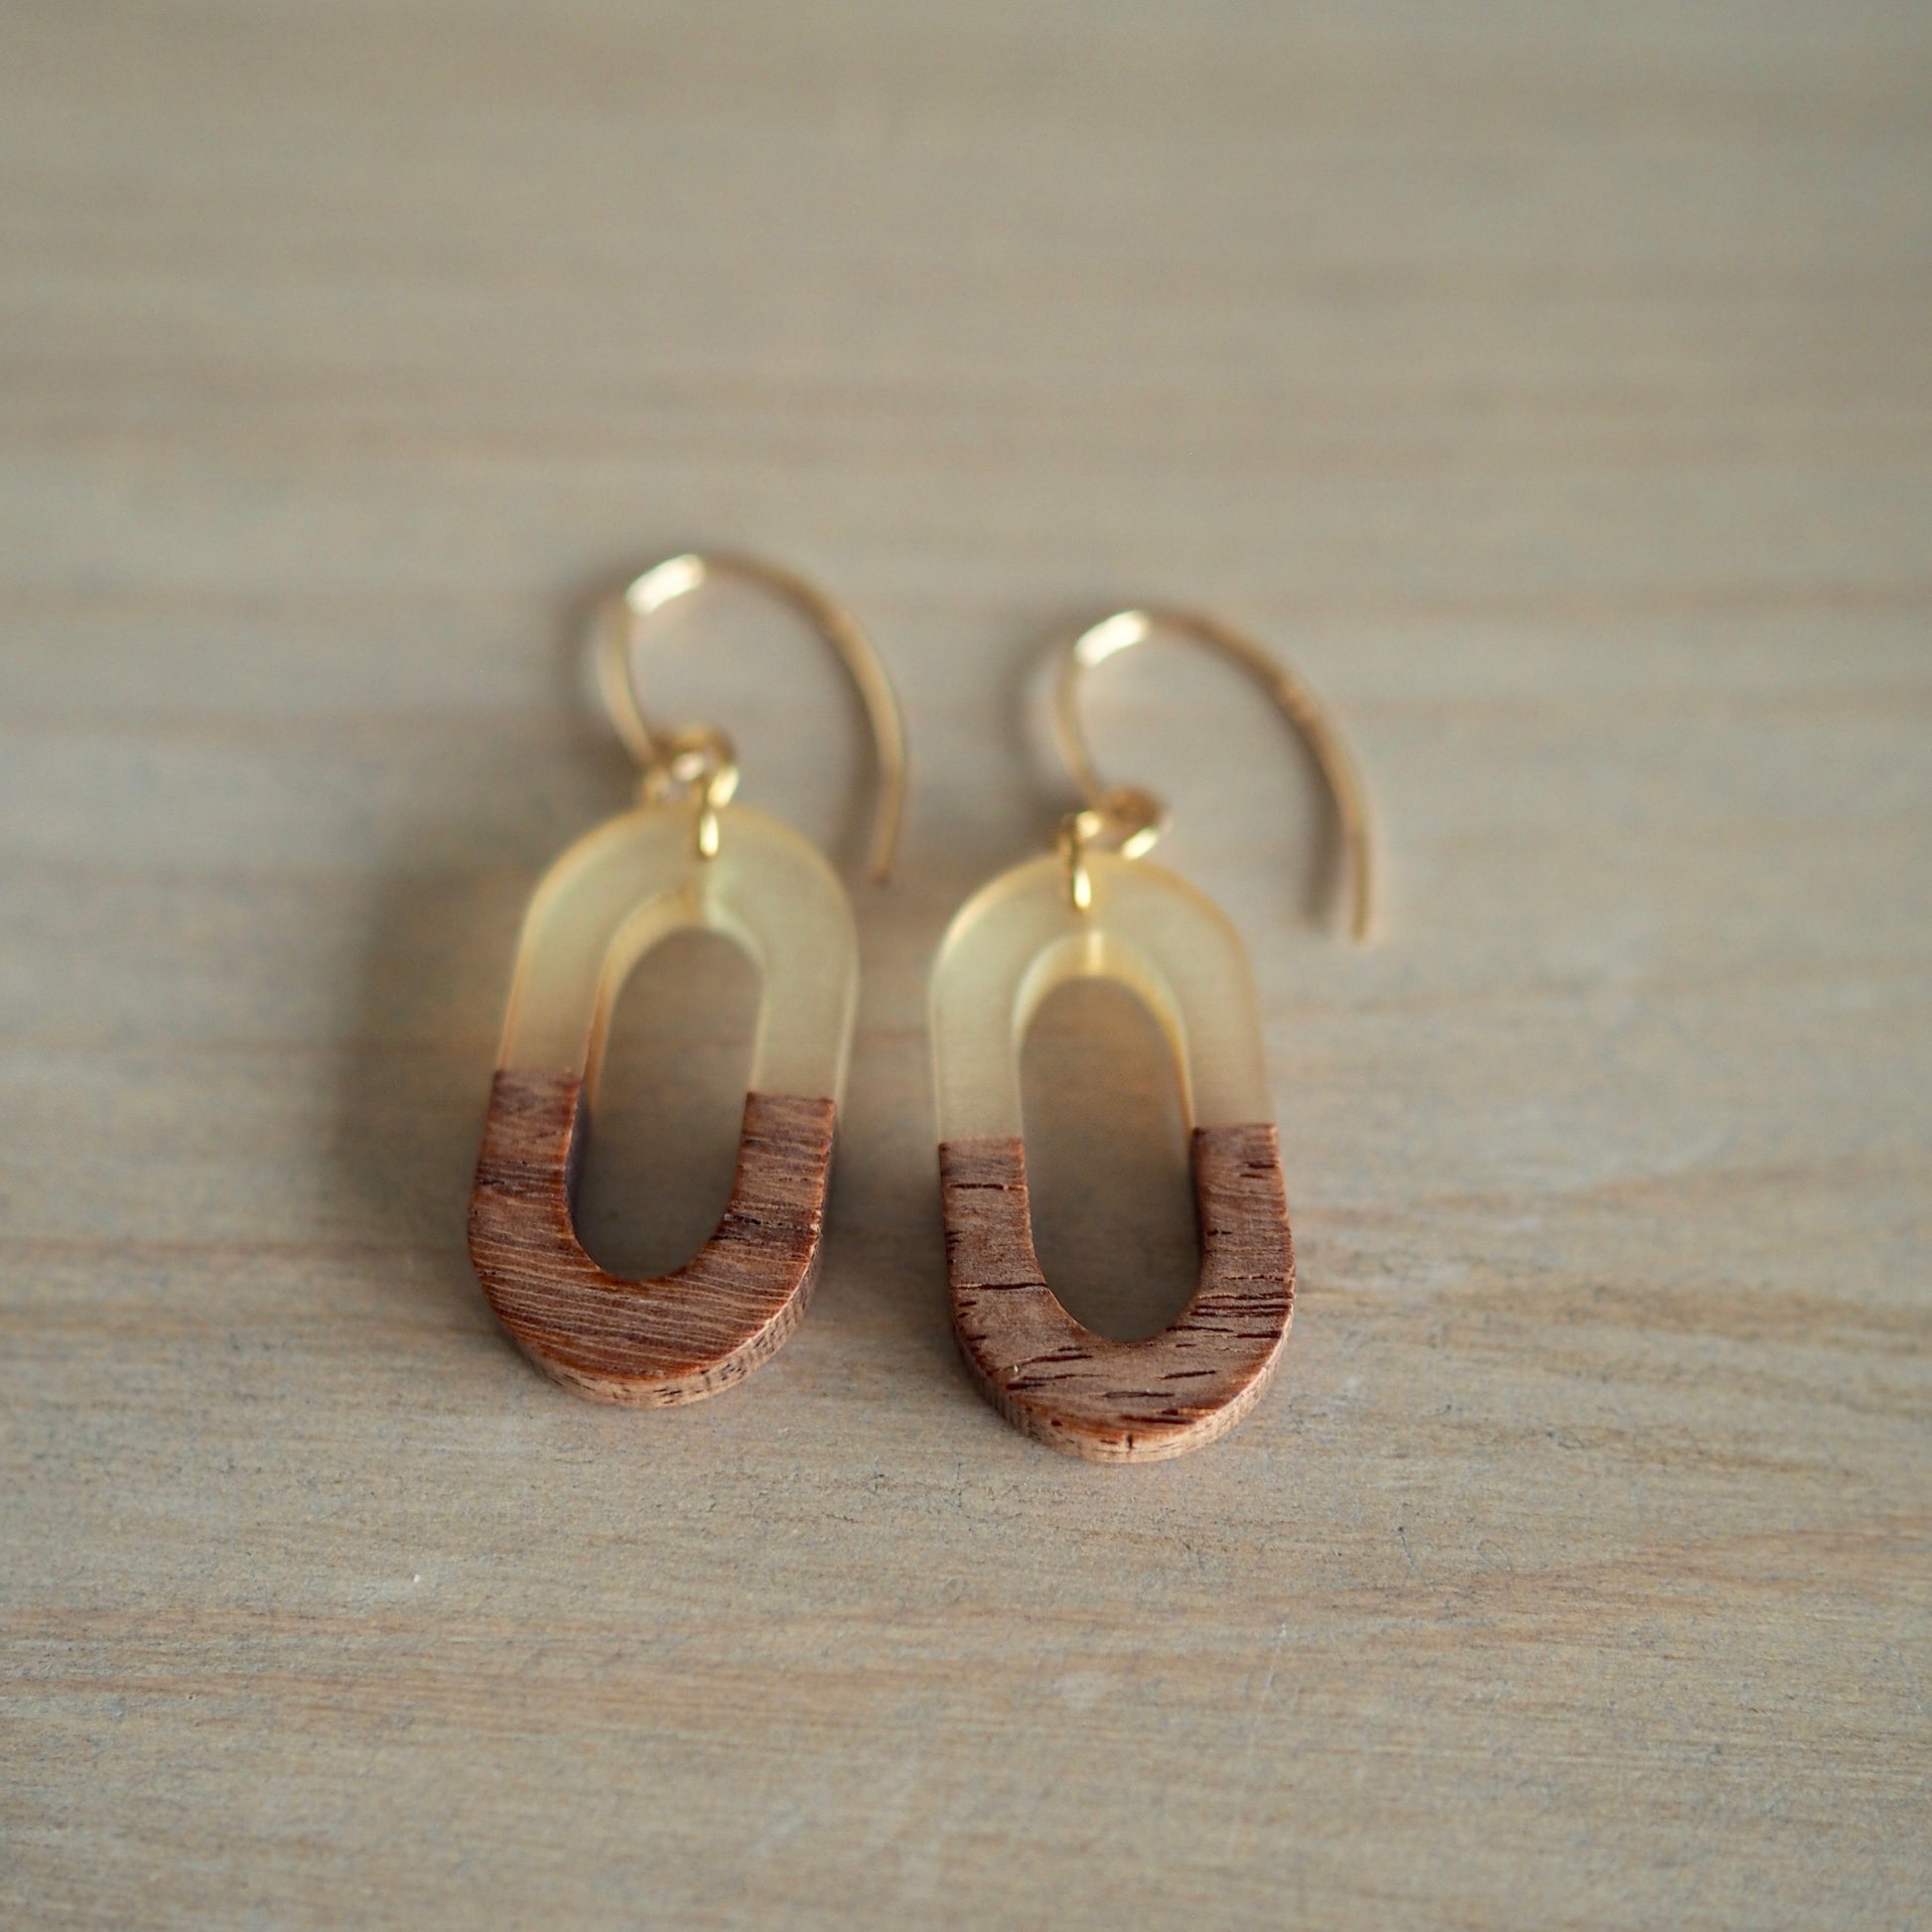 Geometric earrings minimalist wood by Nancy Wallis Designs